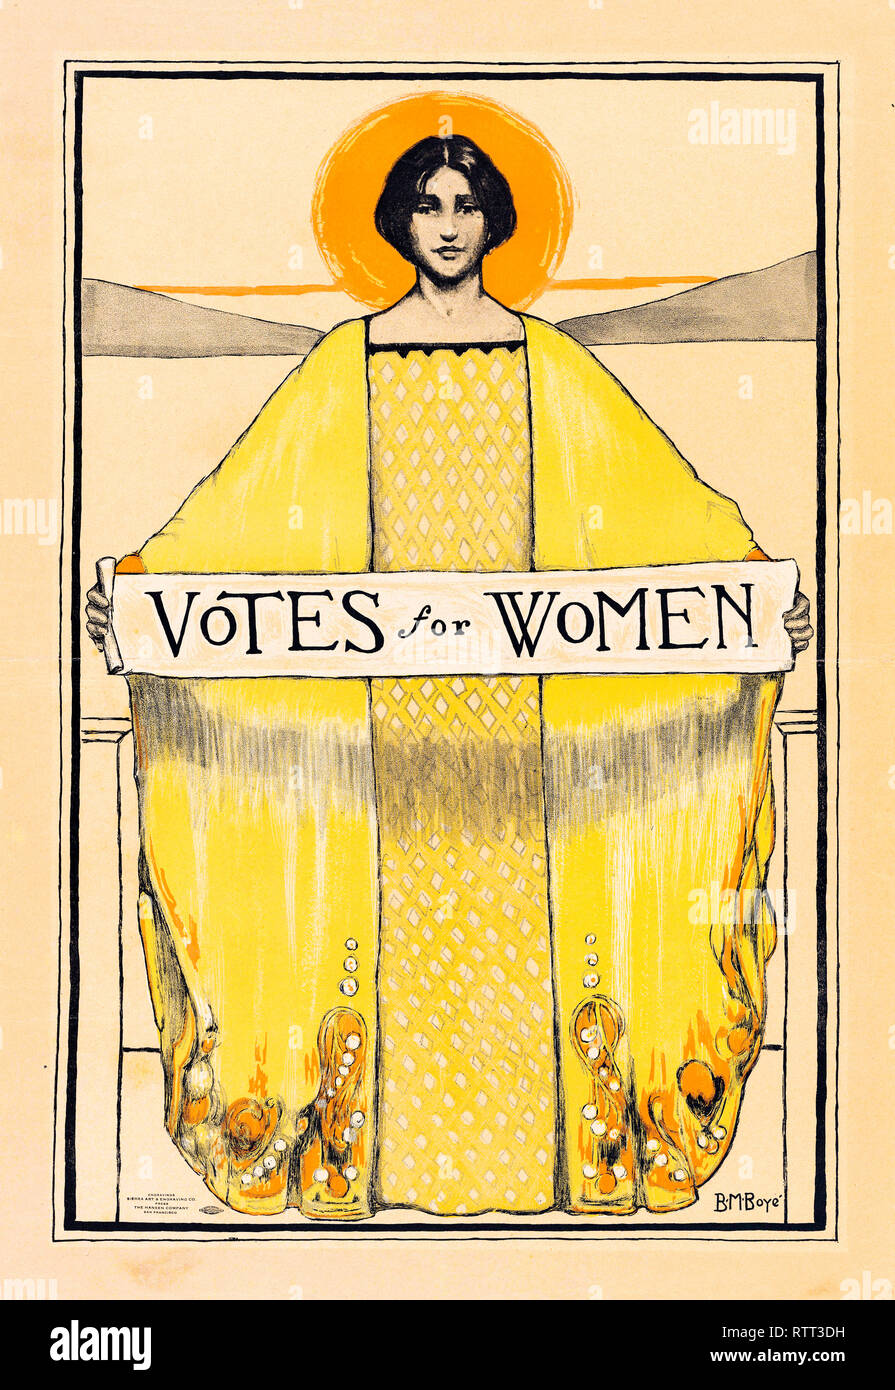 Votes pour les femmes poster, le suffrage des femmes, 1913, UK Banque D'Images